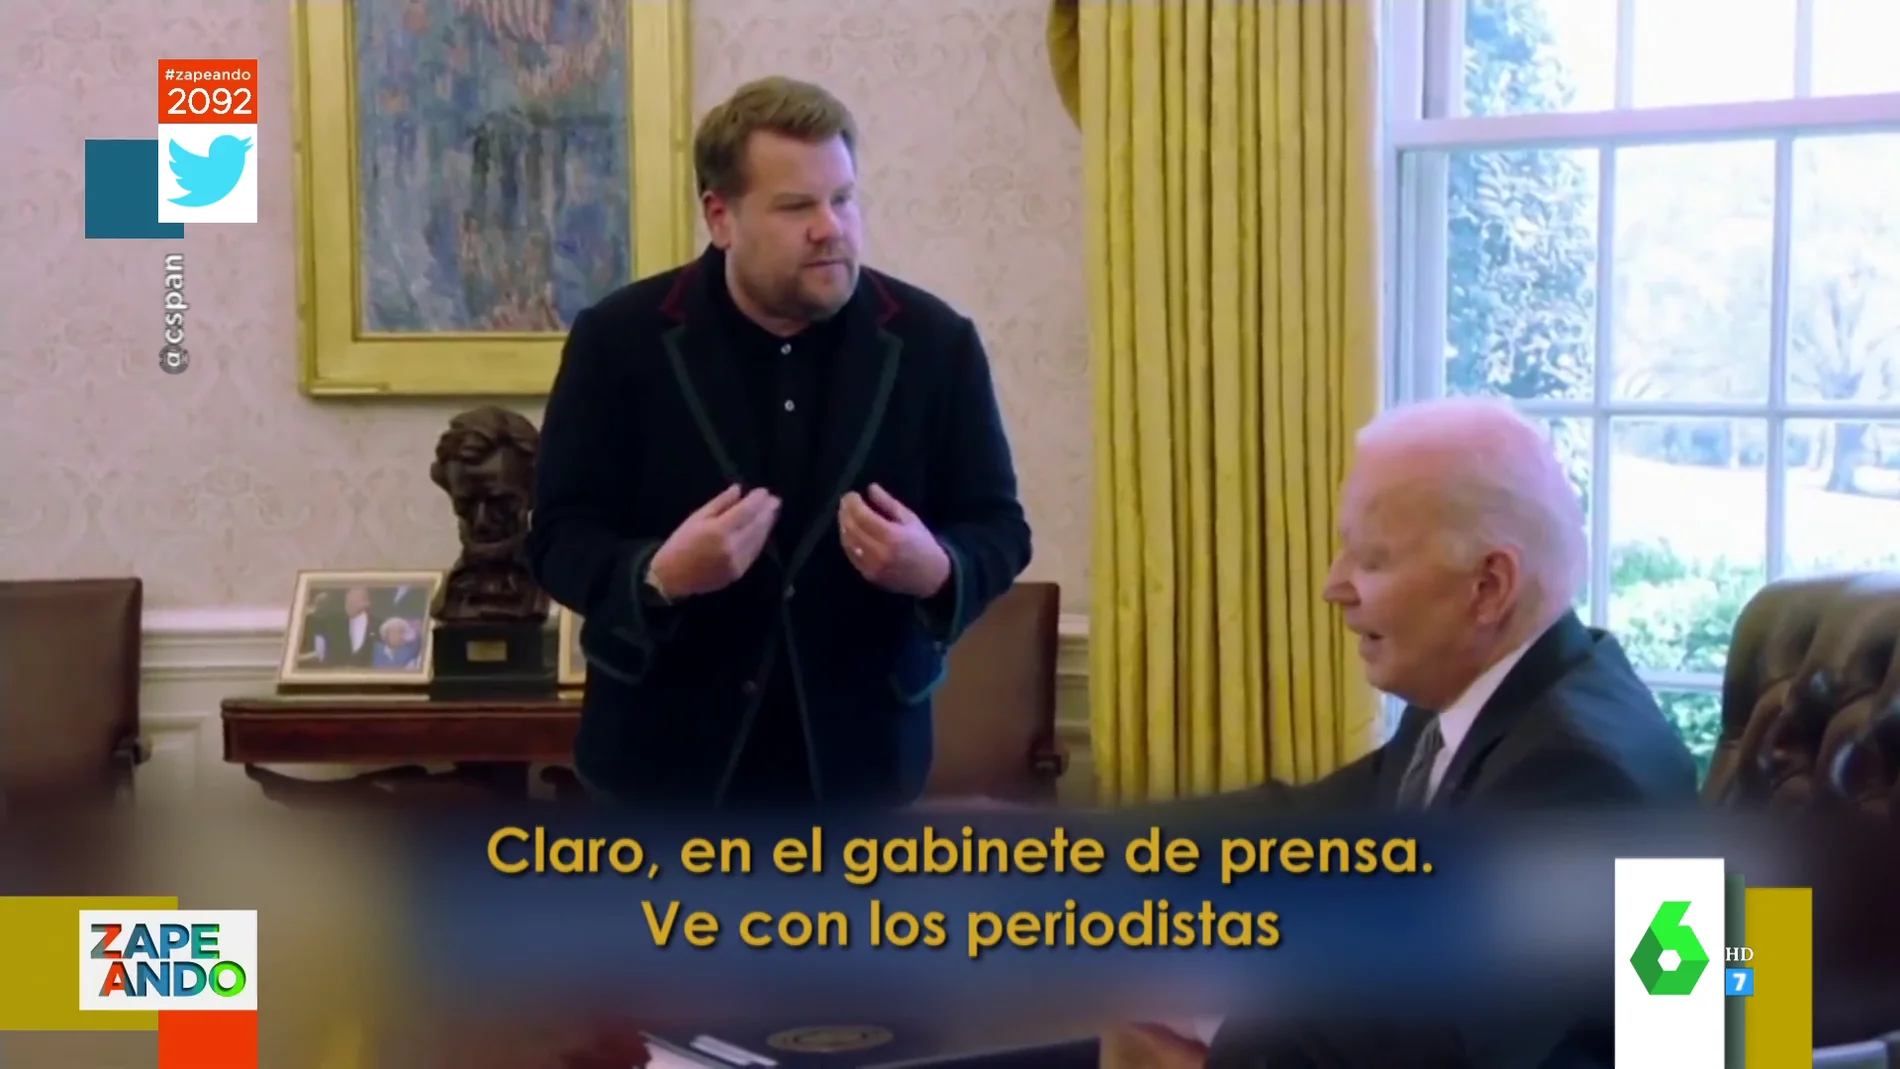 El divertido encuentro de James Corden con Joe Biden en el despacho de la Casa Blanca para pedirle trabajo